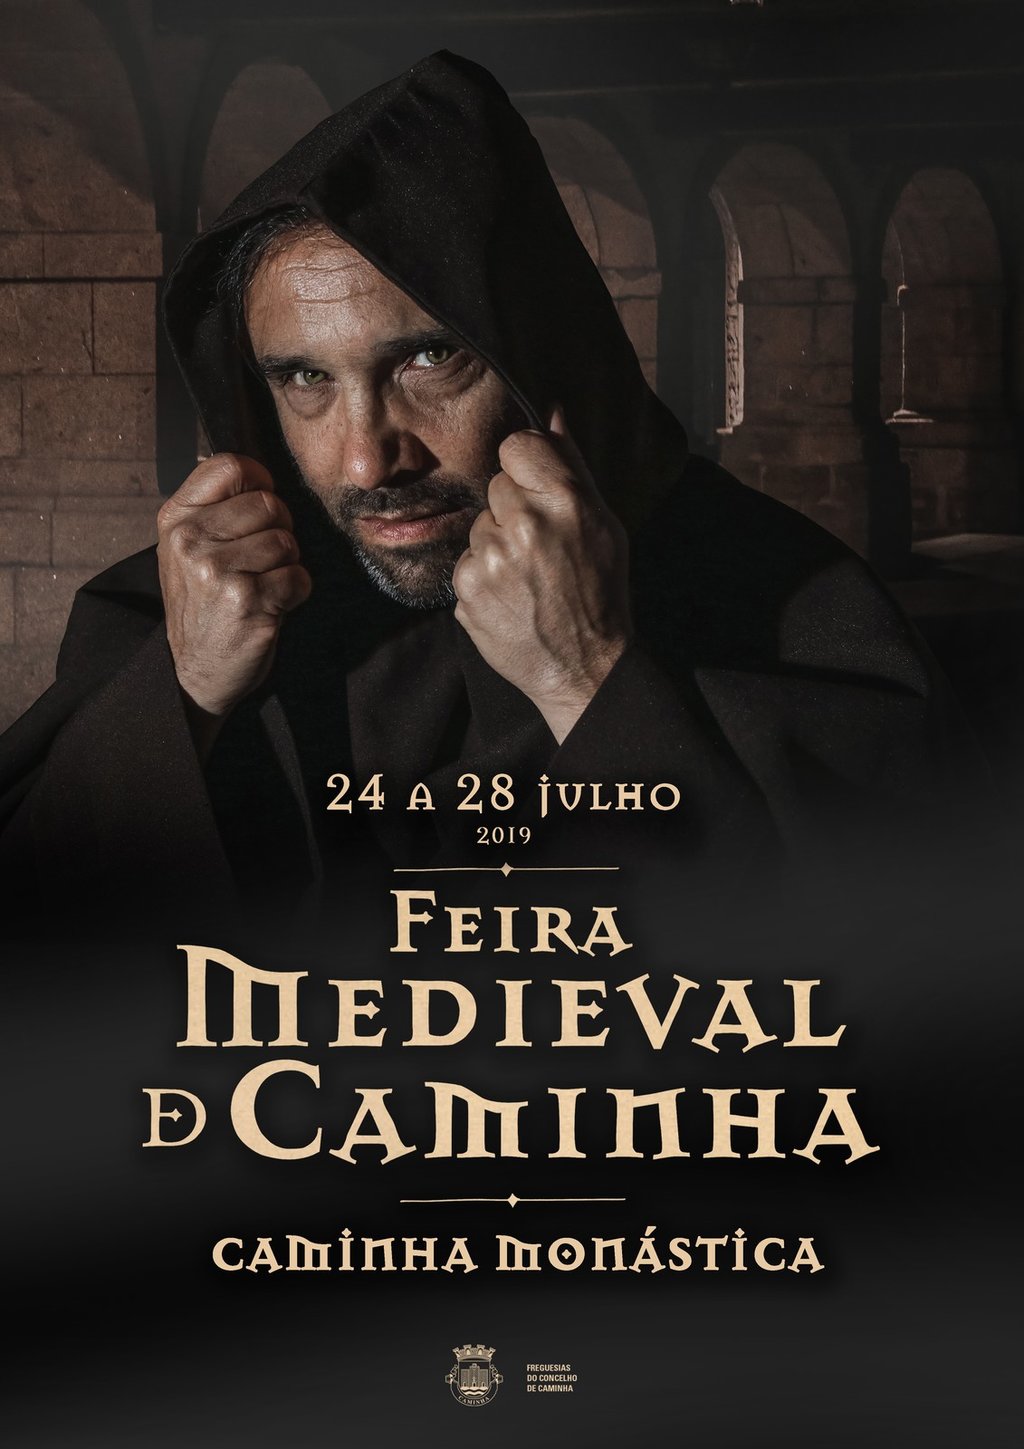 XVI Feira Medieval Caminha, 2019 Ferias y mercados medievales